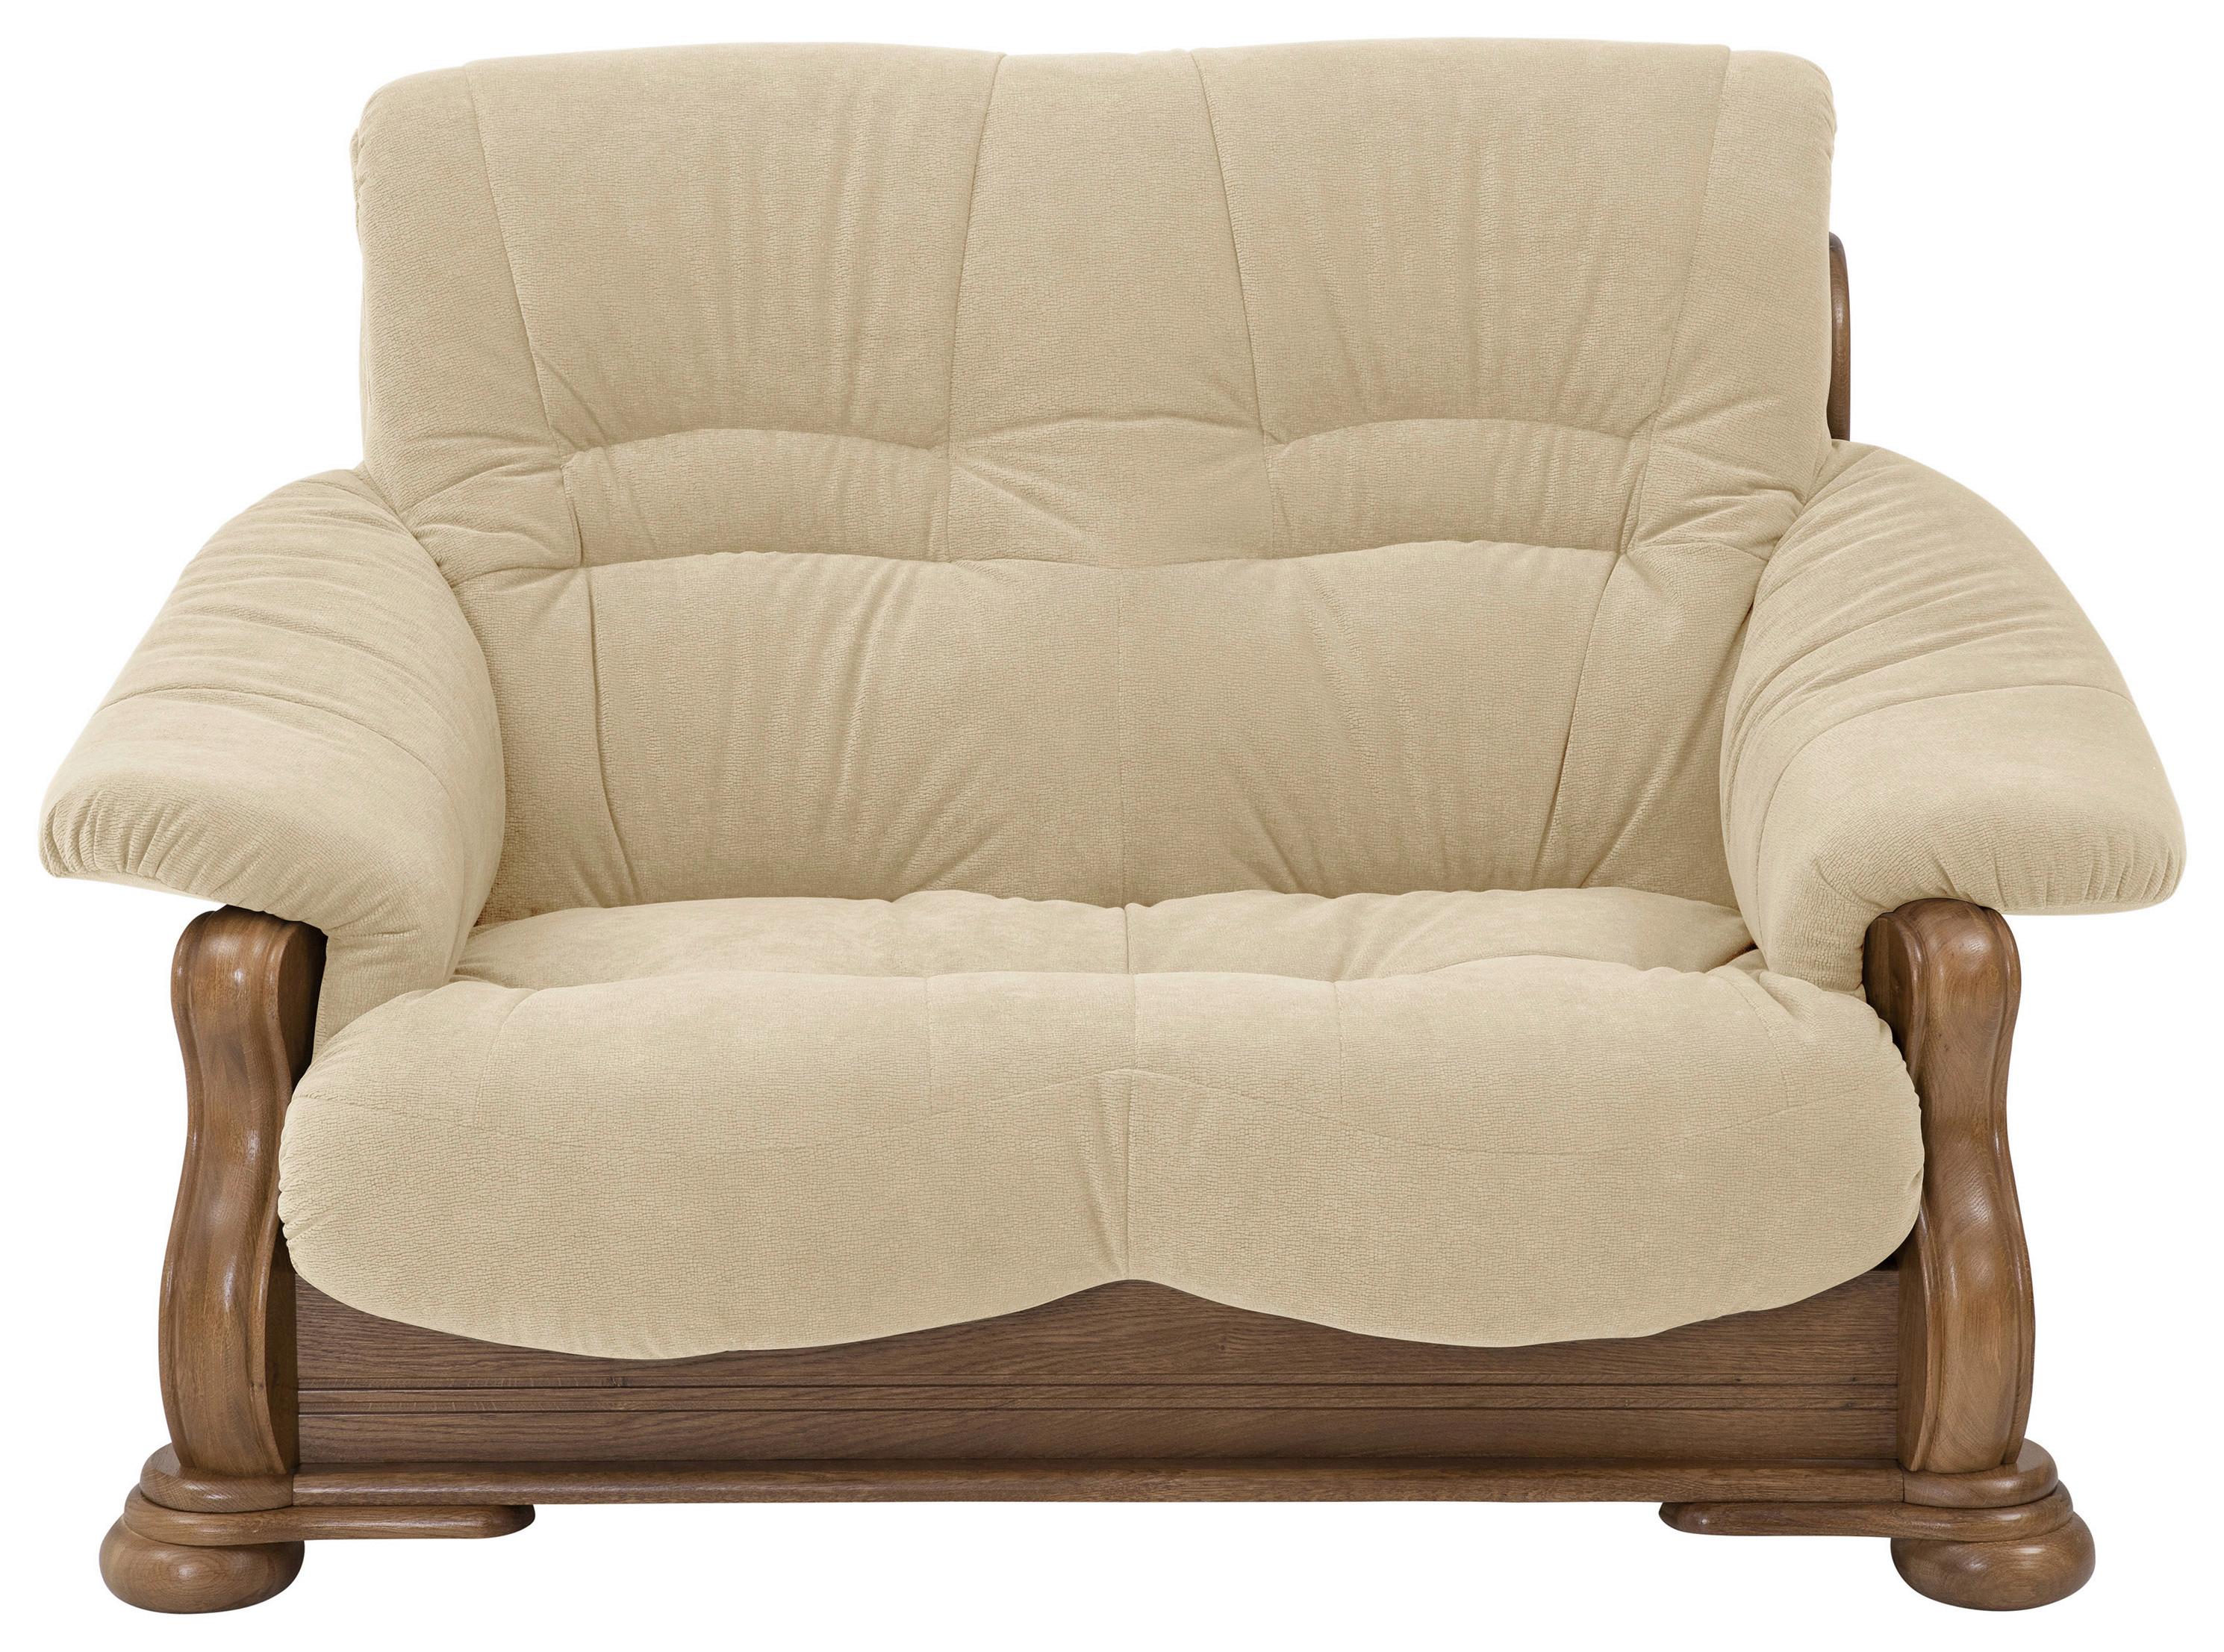 2-Sitzer-Sofa Tennessee Sandfarben Aus Eiche Massiv